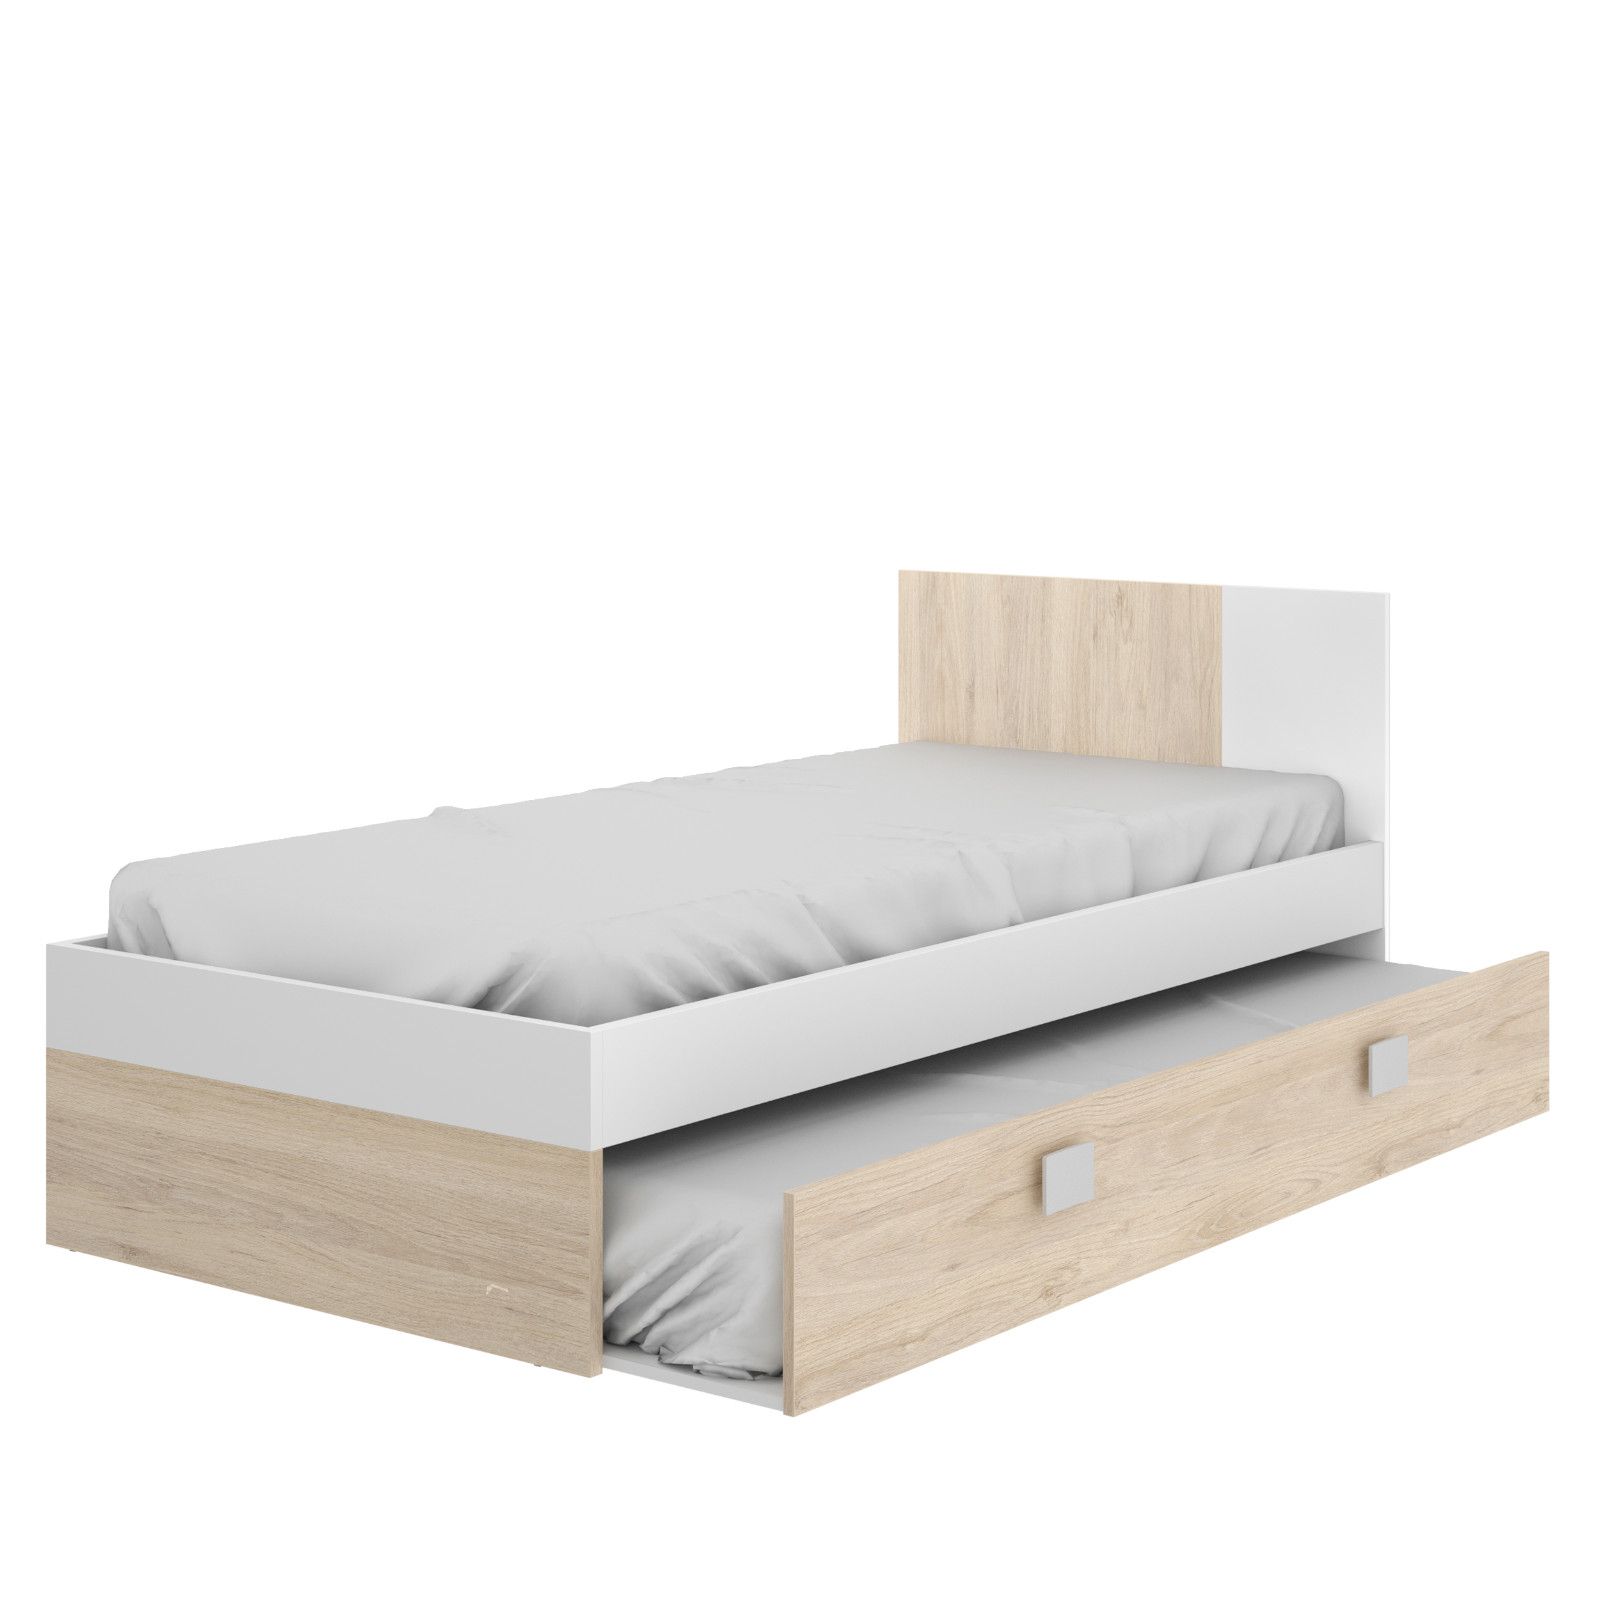 Letto per bambini 90x190 cm in legno bianco e naturale con letto estraibile  - Dinasty